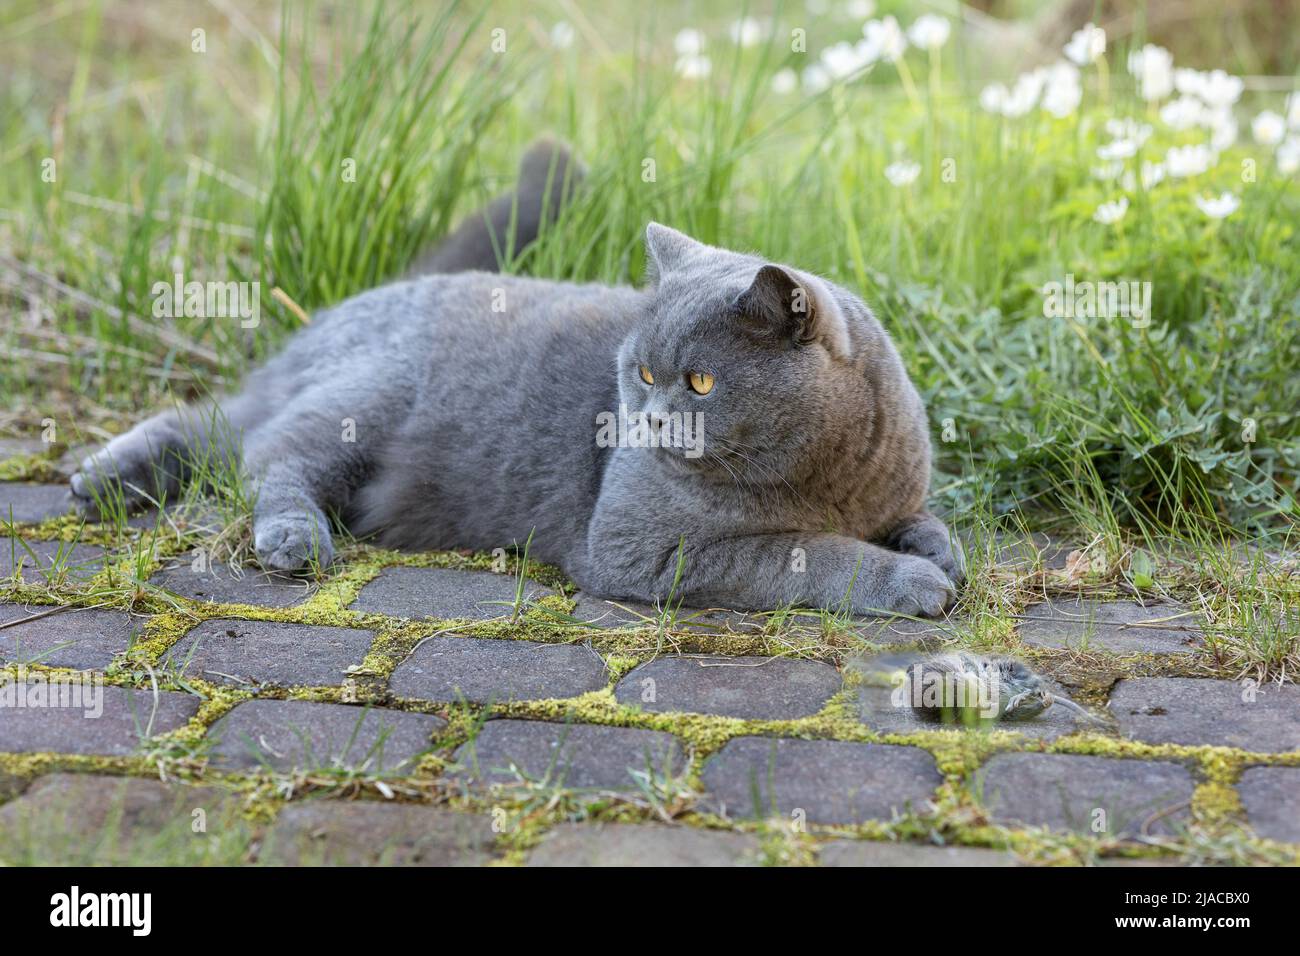 Gatto grigio britannico catturato il topo mentre caccia all'aperto, primo piano. Foto di alta qualità Foto Stock